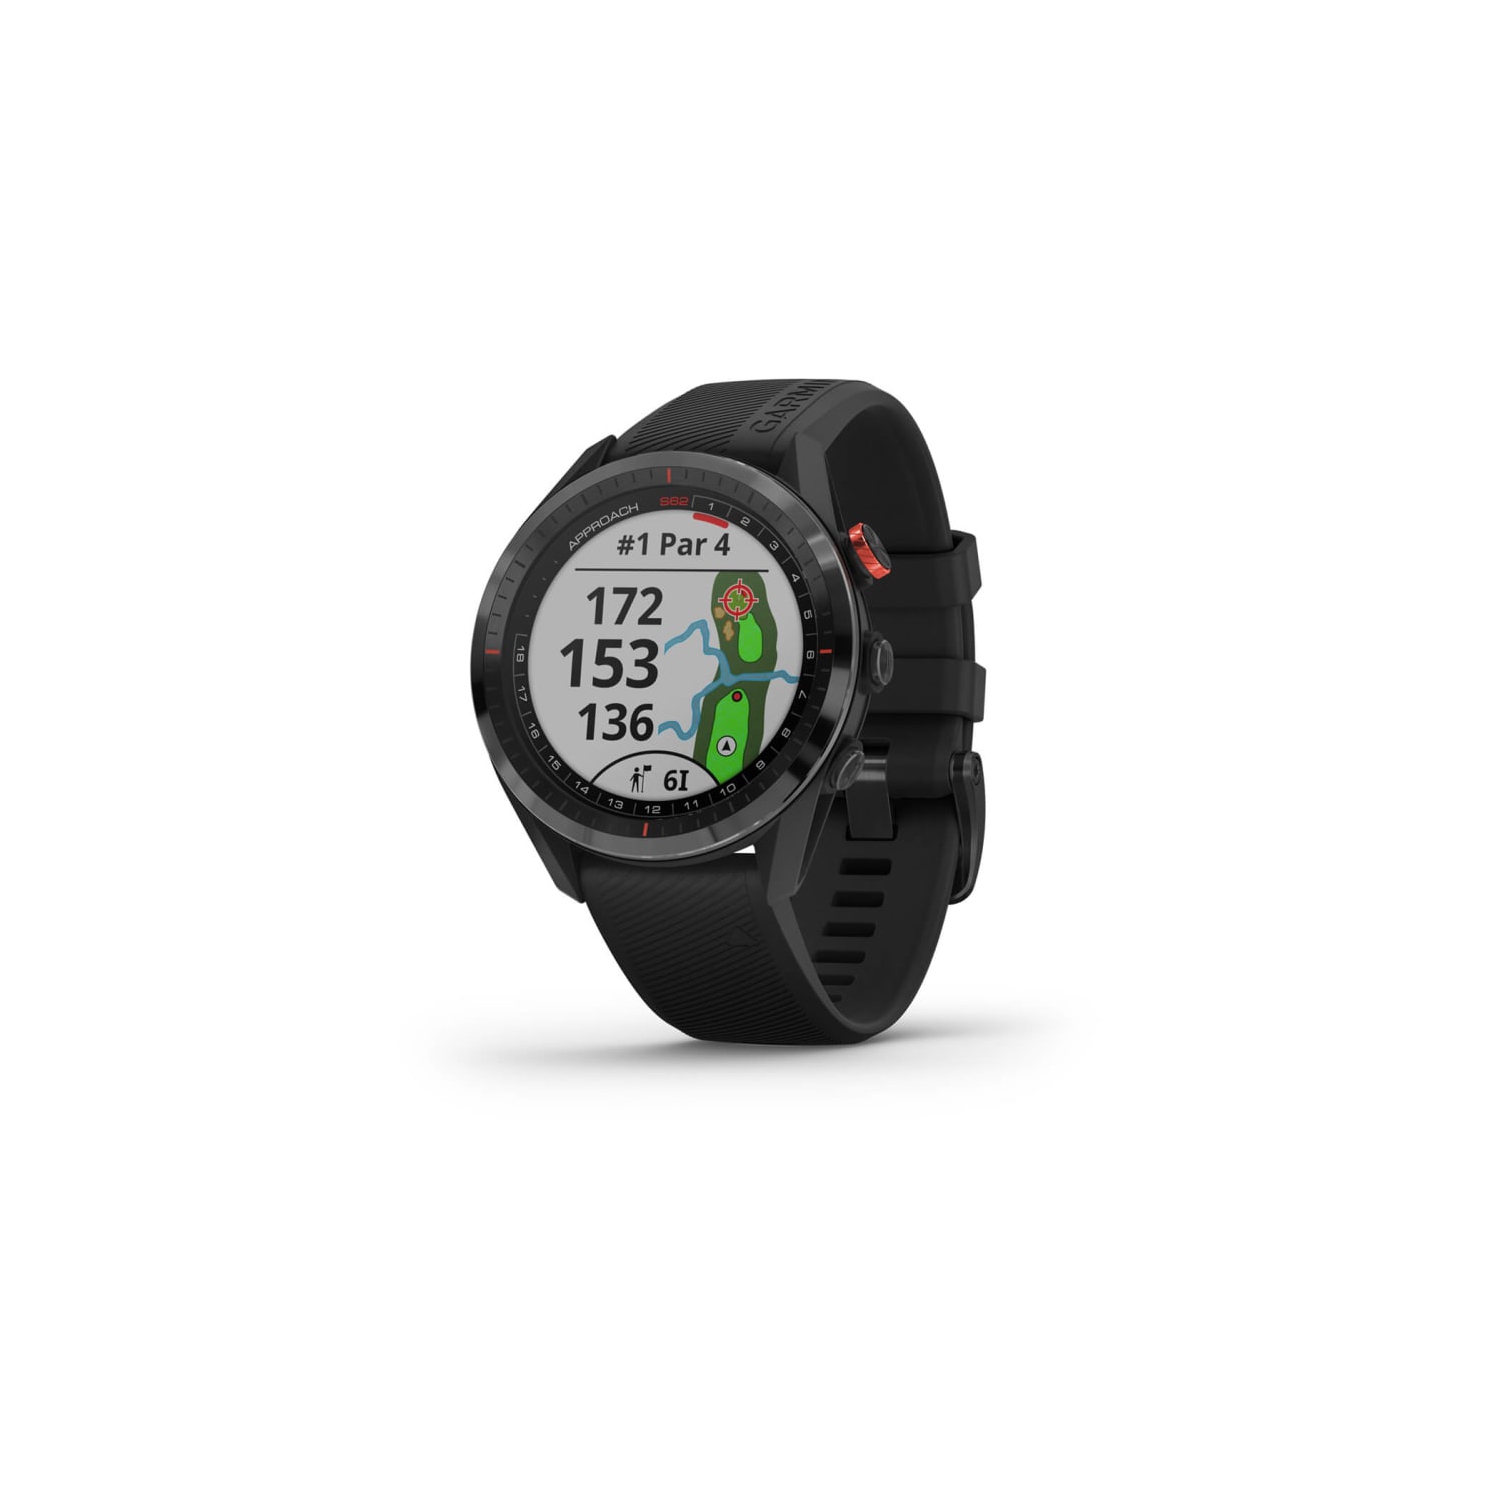 Garmin Approach S62 (Black), GPS Golf Watch, 42K+ Preloaded Golf